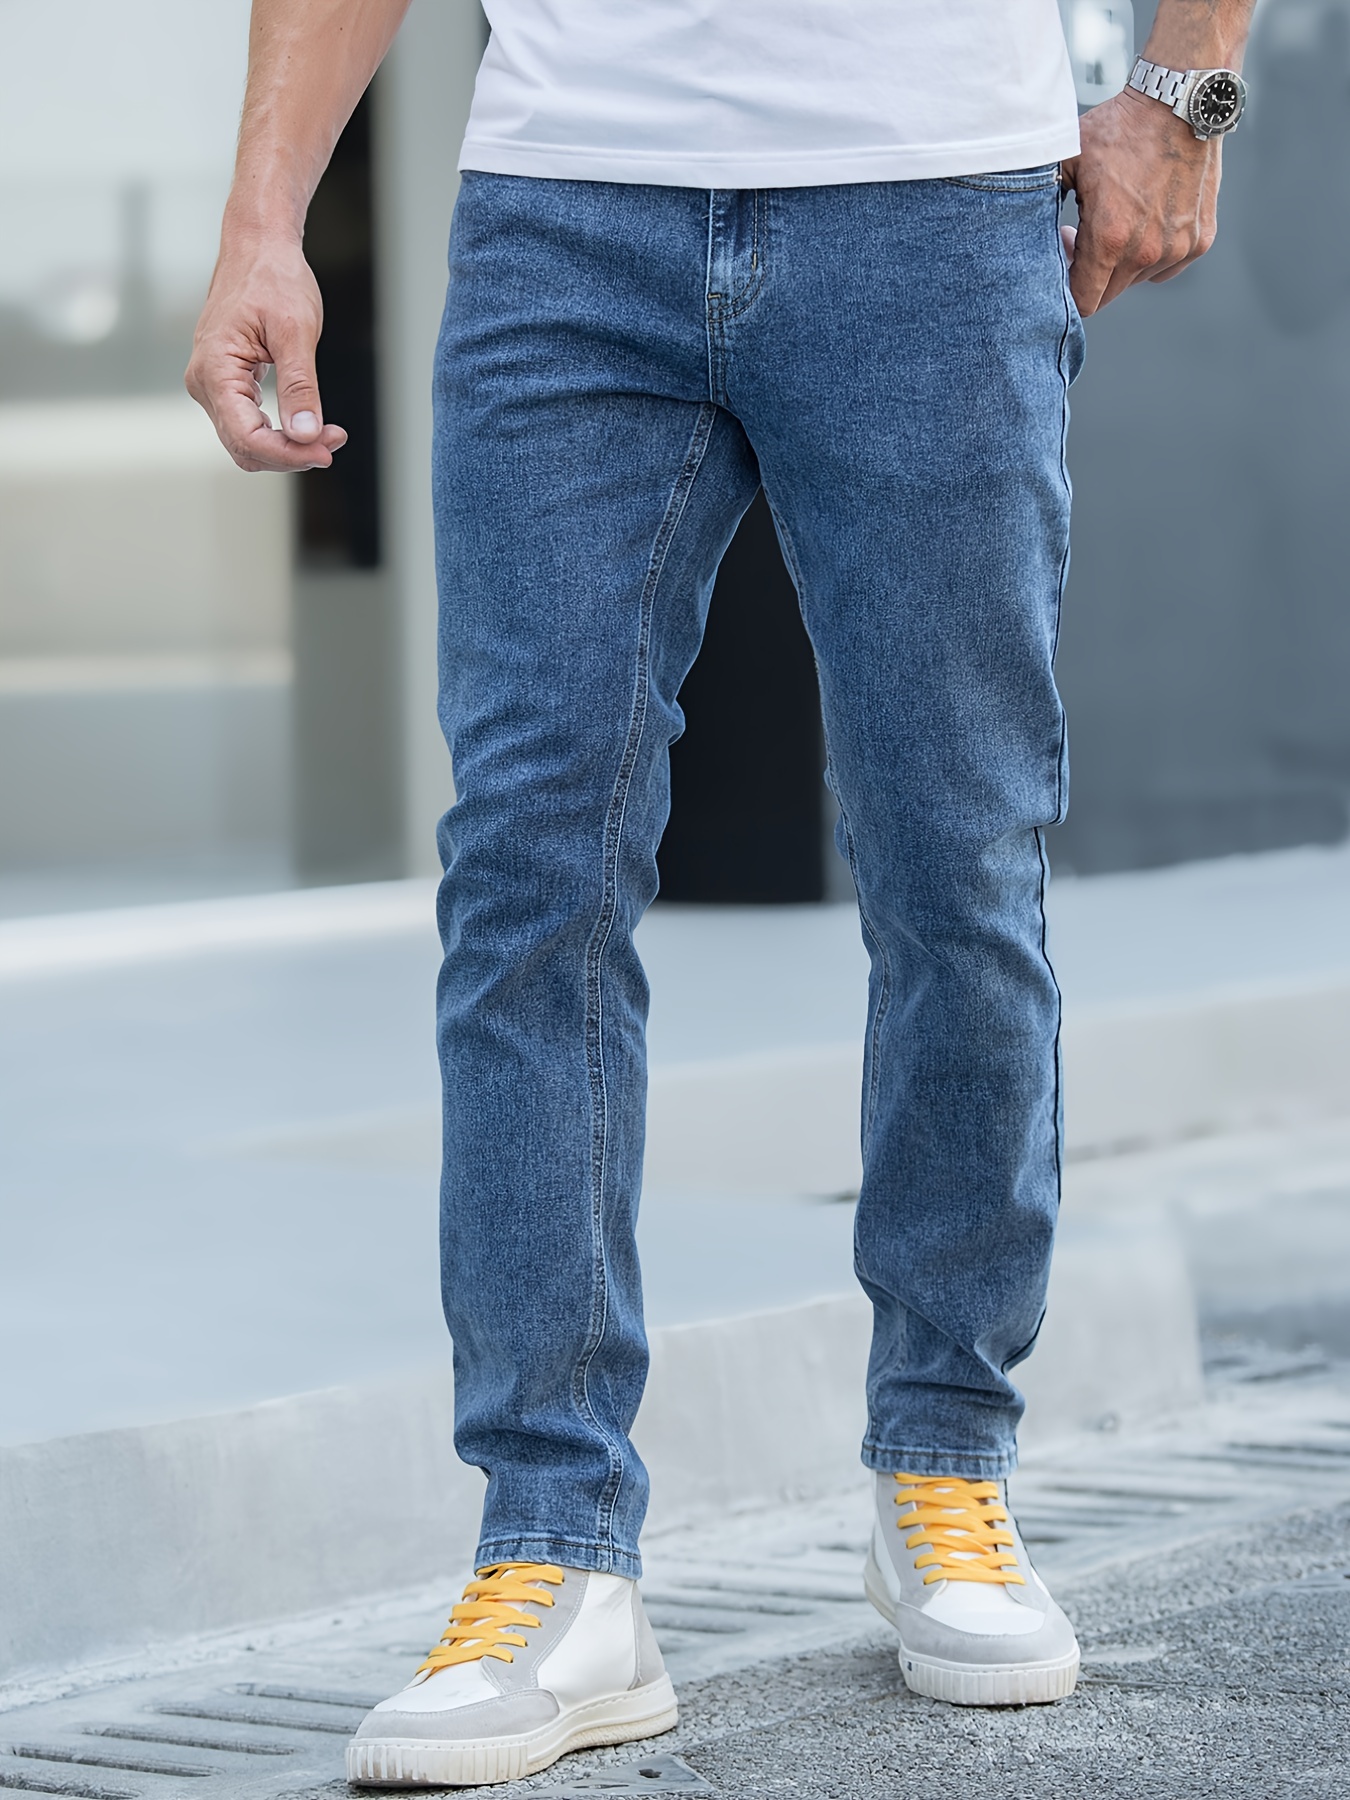 Men's Slim fit Jeans, Black, Grey, Blue & More